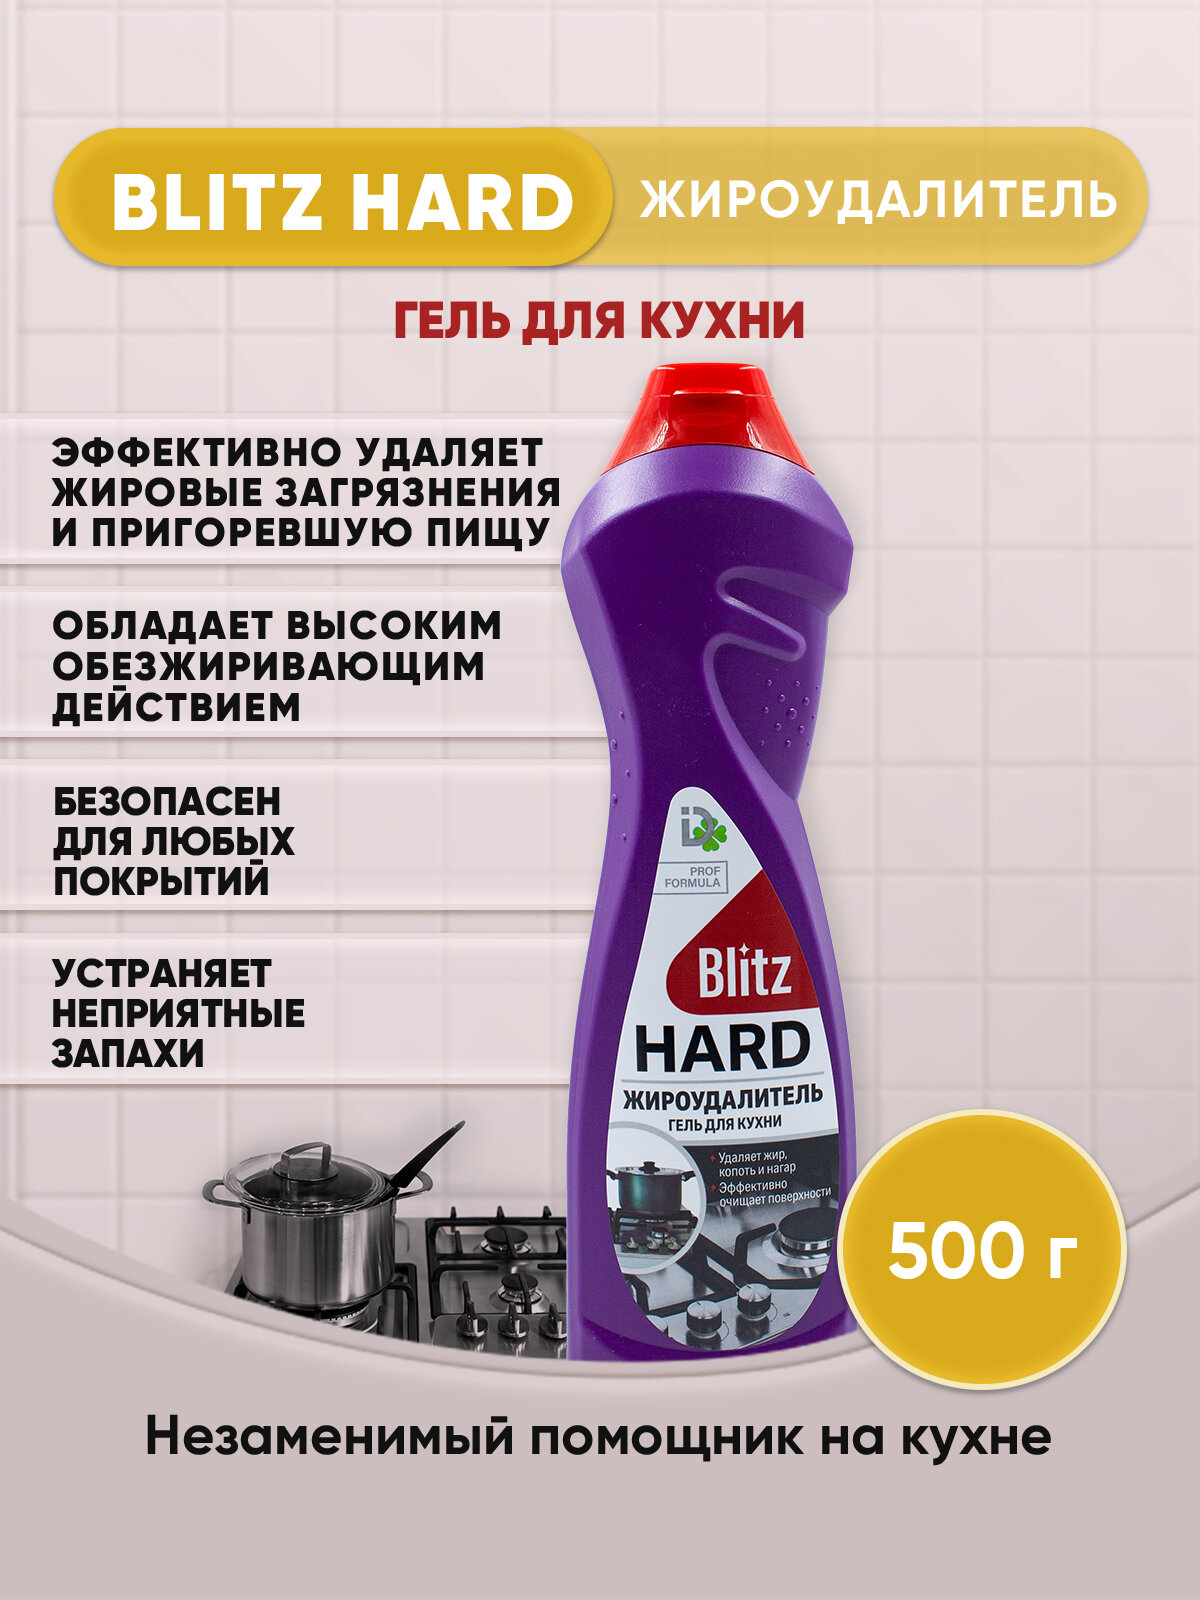 BLITZ HARD Антижир гель для кухни 500г/1шт